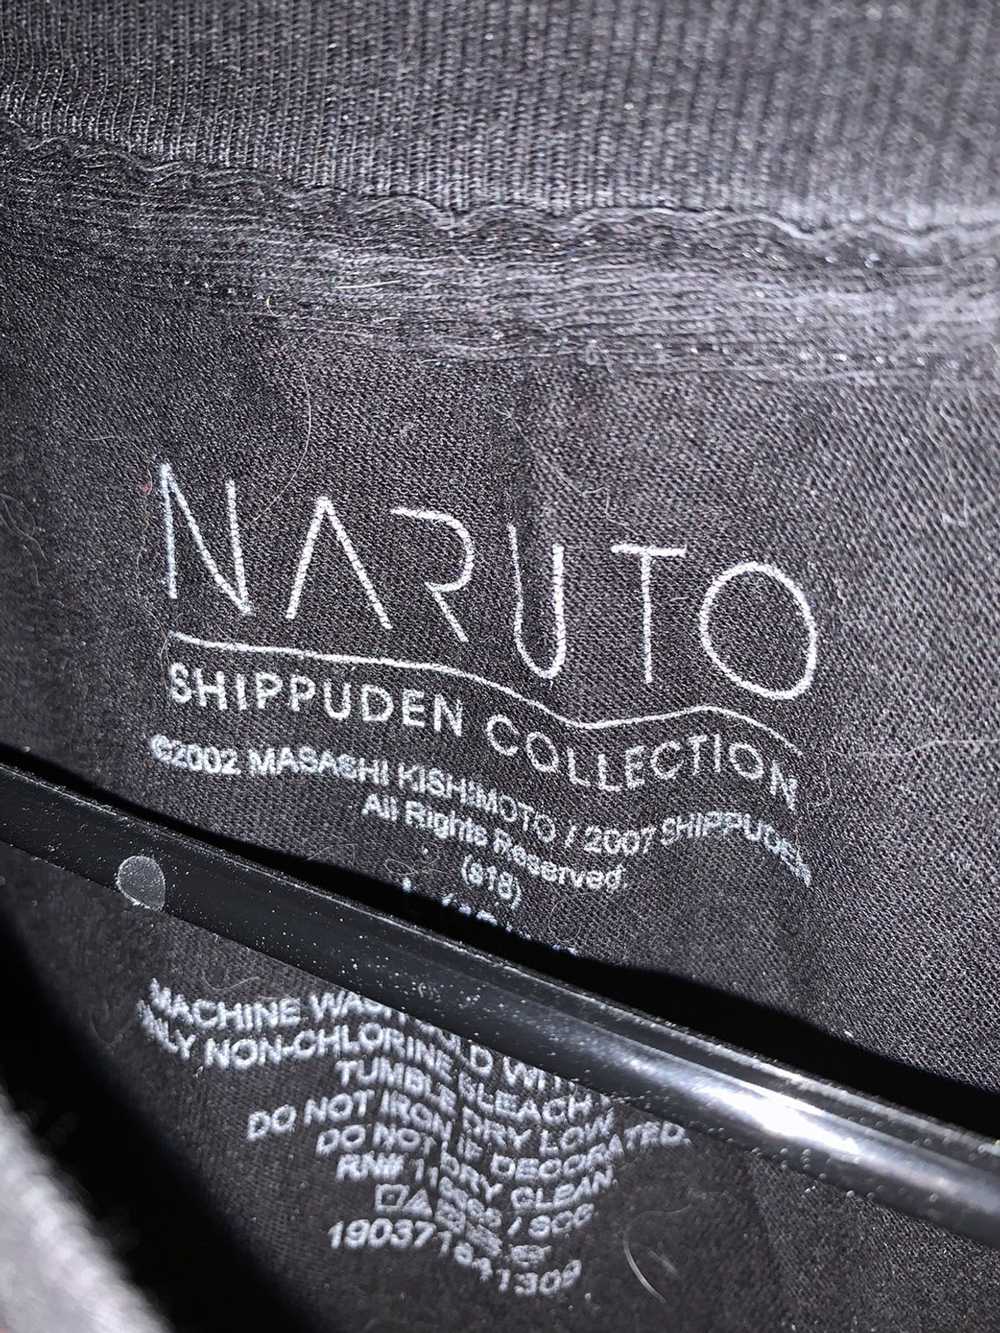 Cartoon Network Naruto shippuden kakashi shirt - image 3